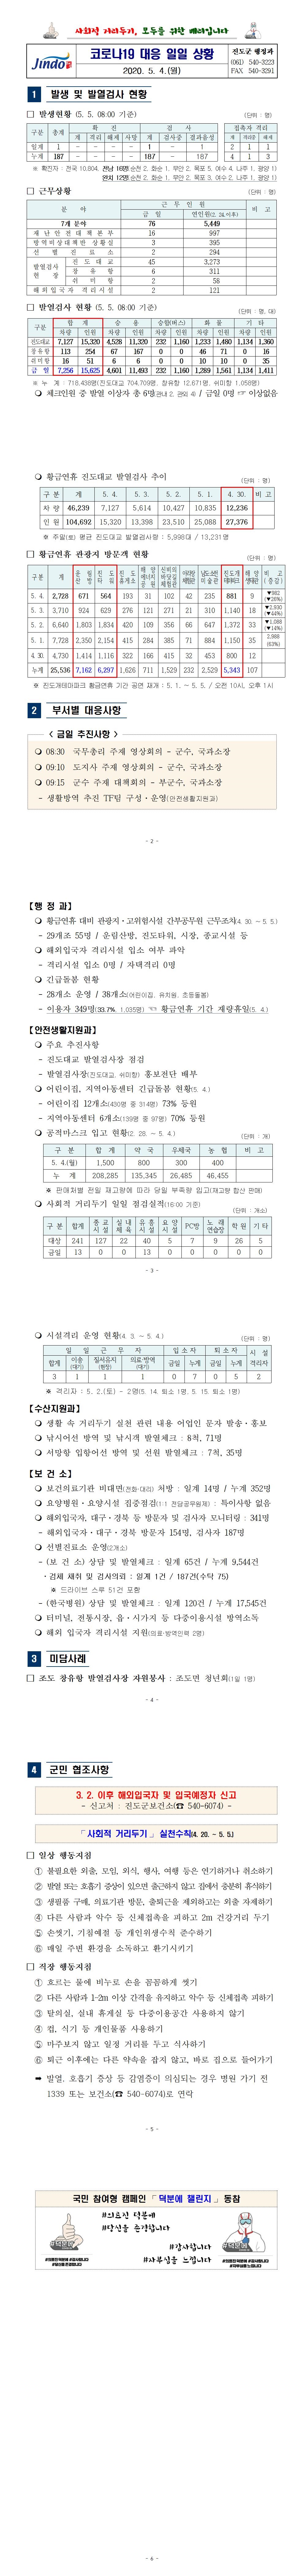 코로나19 대응 일일상황보고(0504) 첨부#2